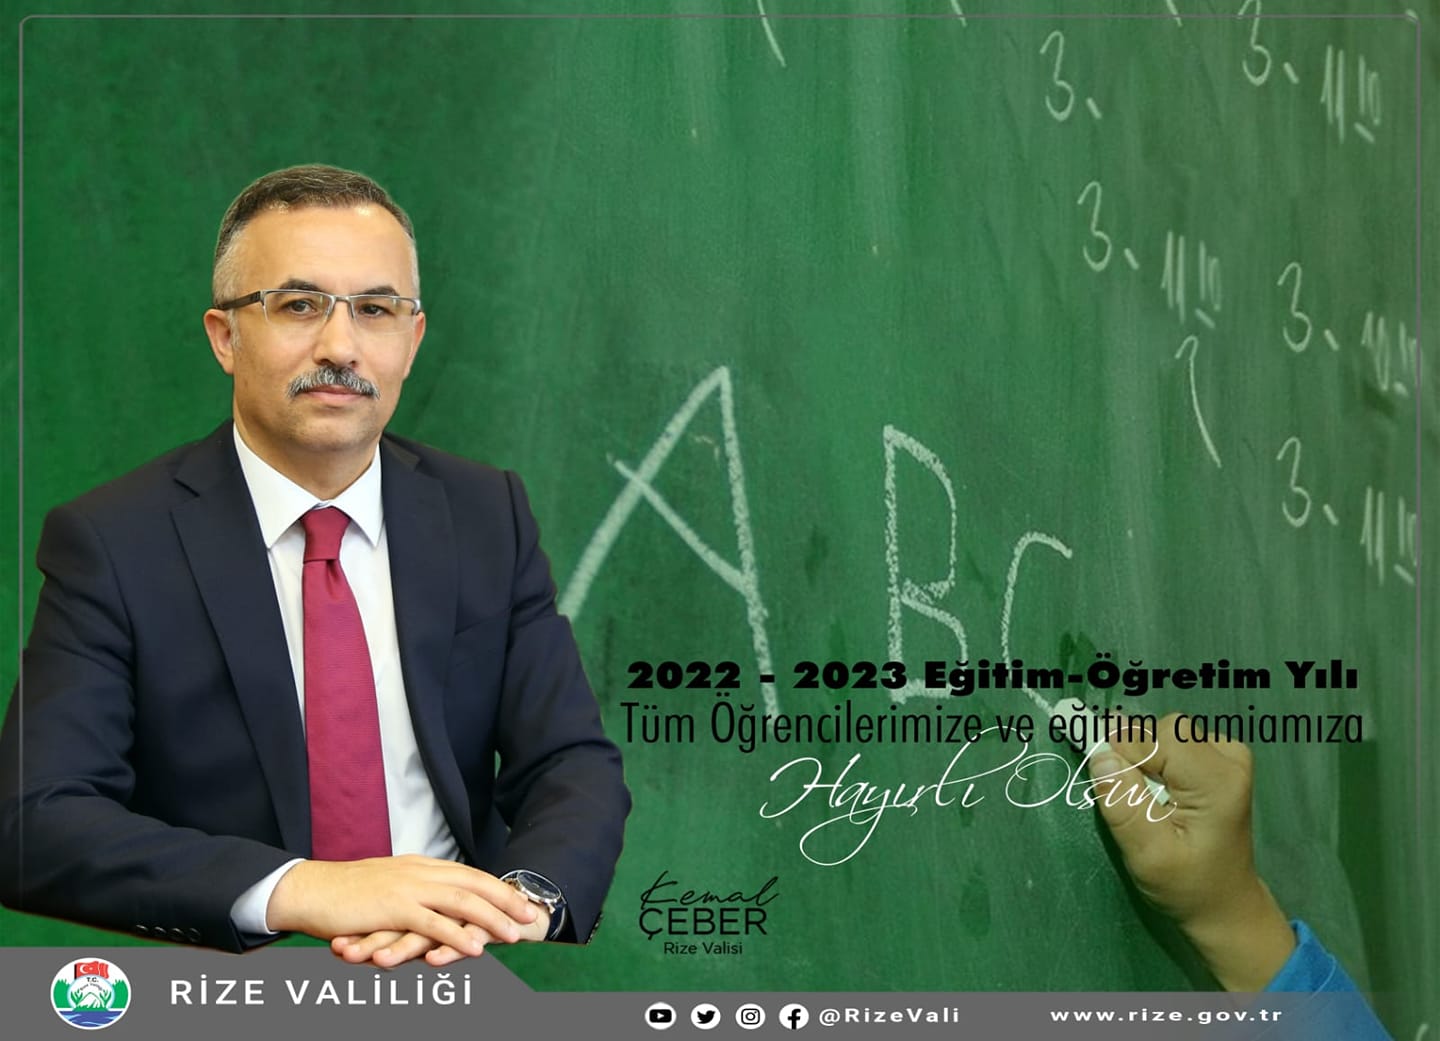 Vali Kemal Çeber’in 2022-2023 Eğitim ve Öğretim Yılı Mesajı